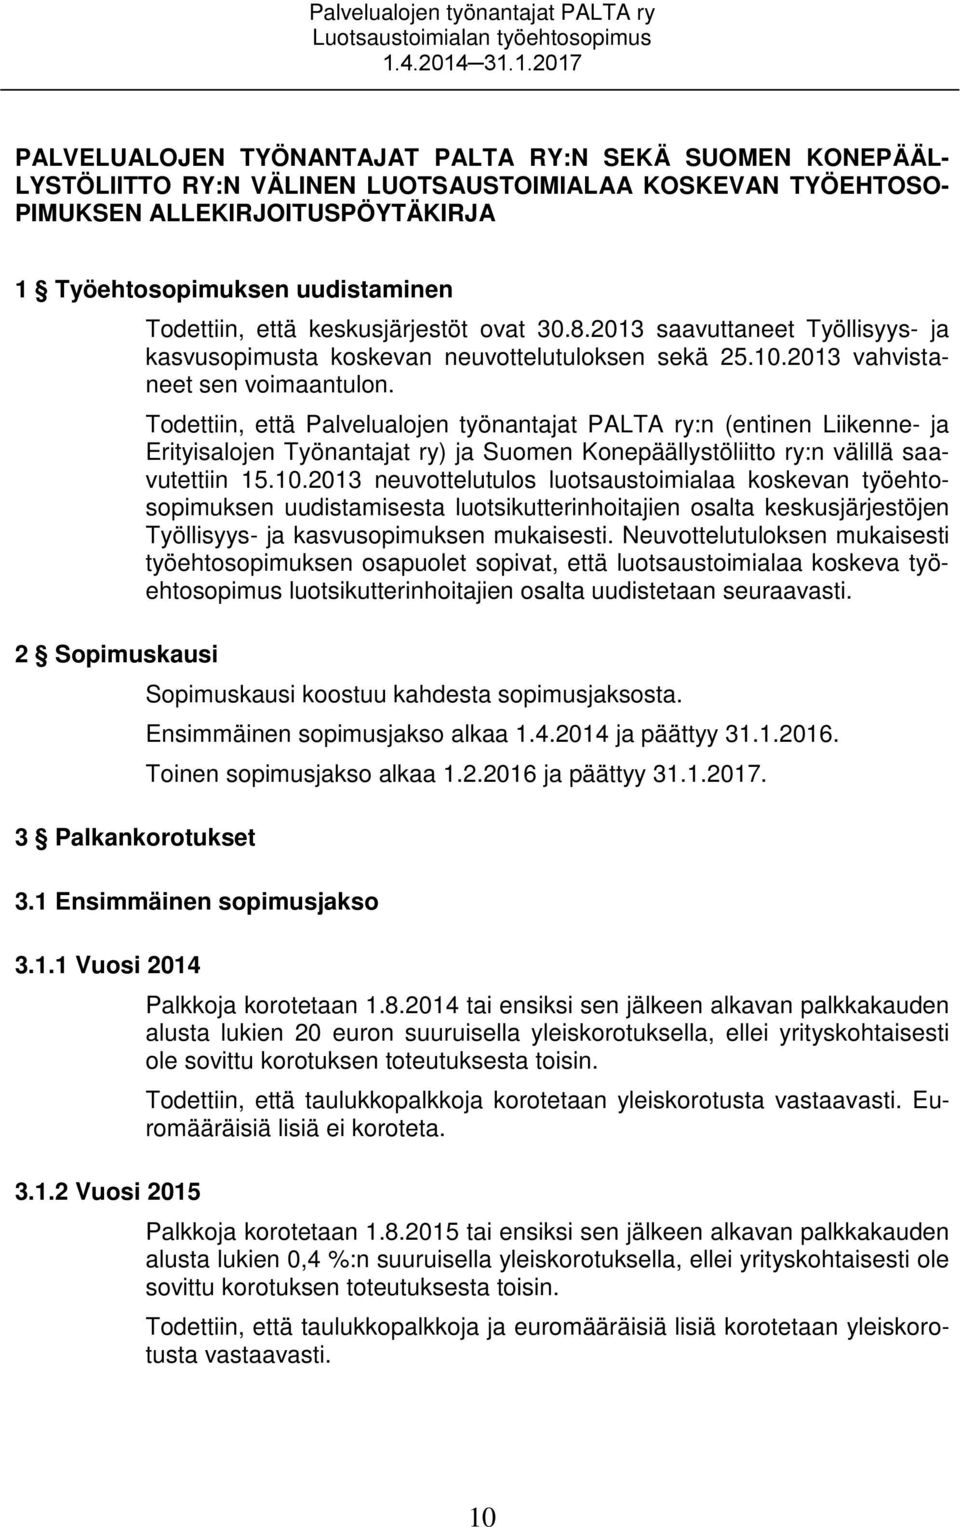 2013 vahvistaneet sen voimaantulon. Todettiin, että Palvelualojen työnantajat PALTA ry:n (entinen Liikenne- ja Erityisalojen Työnantajat ry) ja Suomen Konepäällystöliitto ry:n välillä saavutettiin 15.